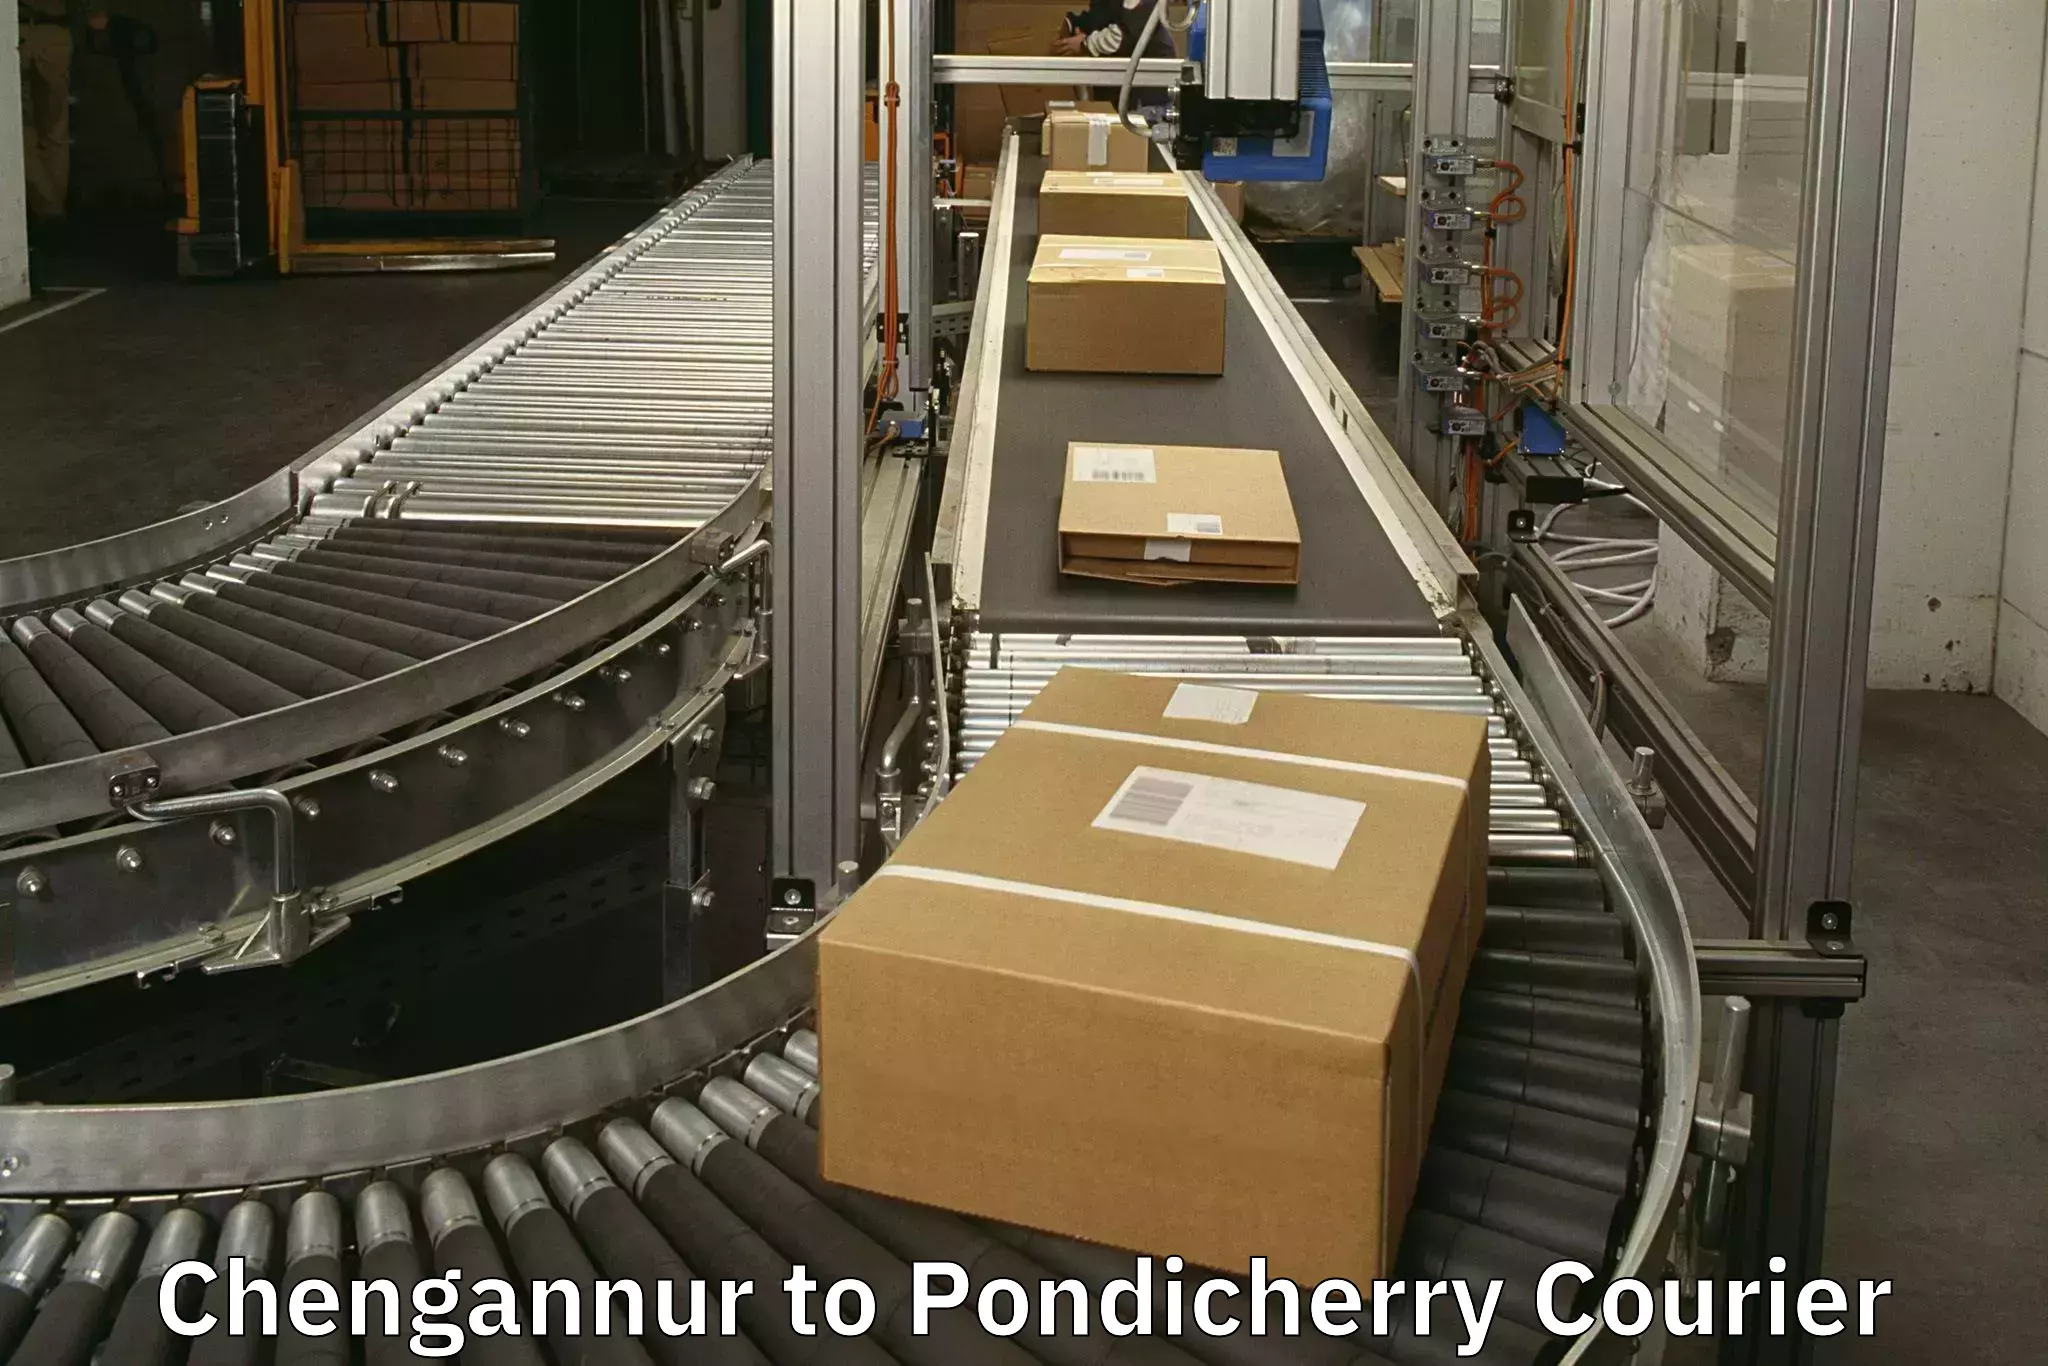 Baggage transport scheduler Chengannur to Pondicherry